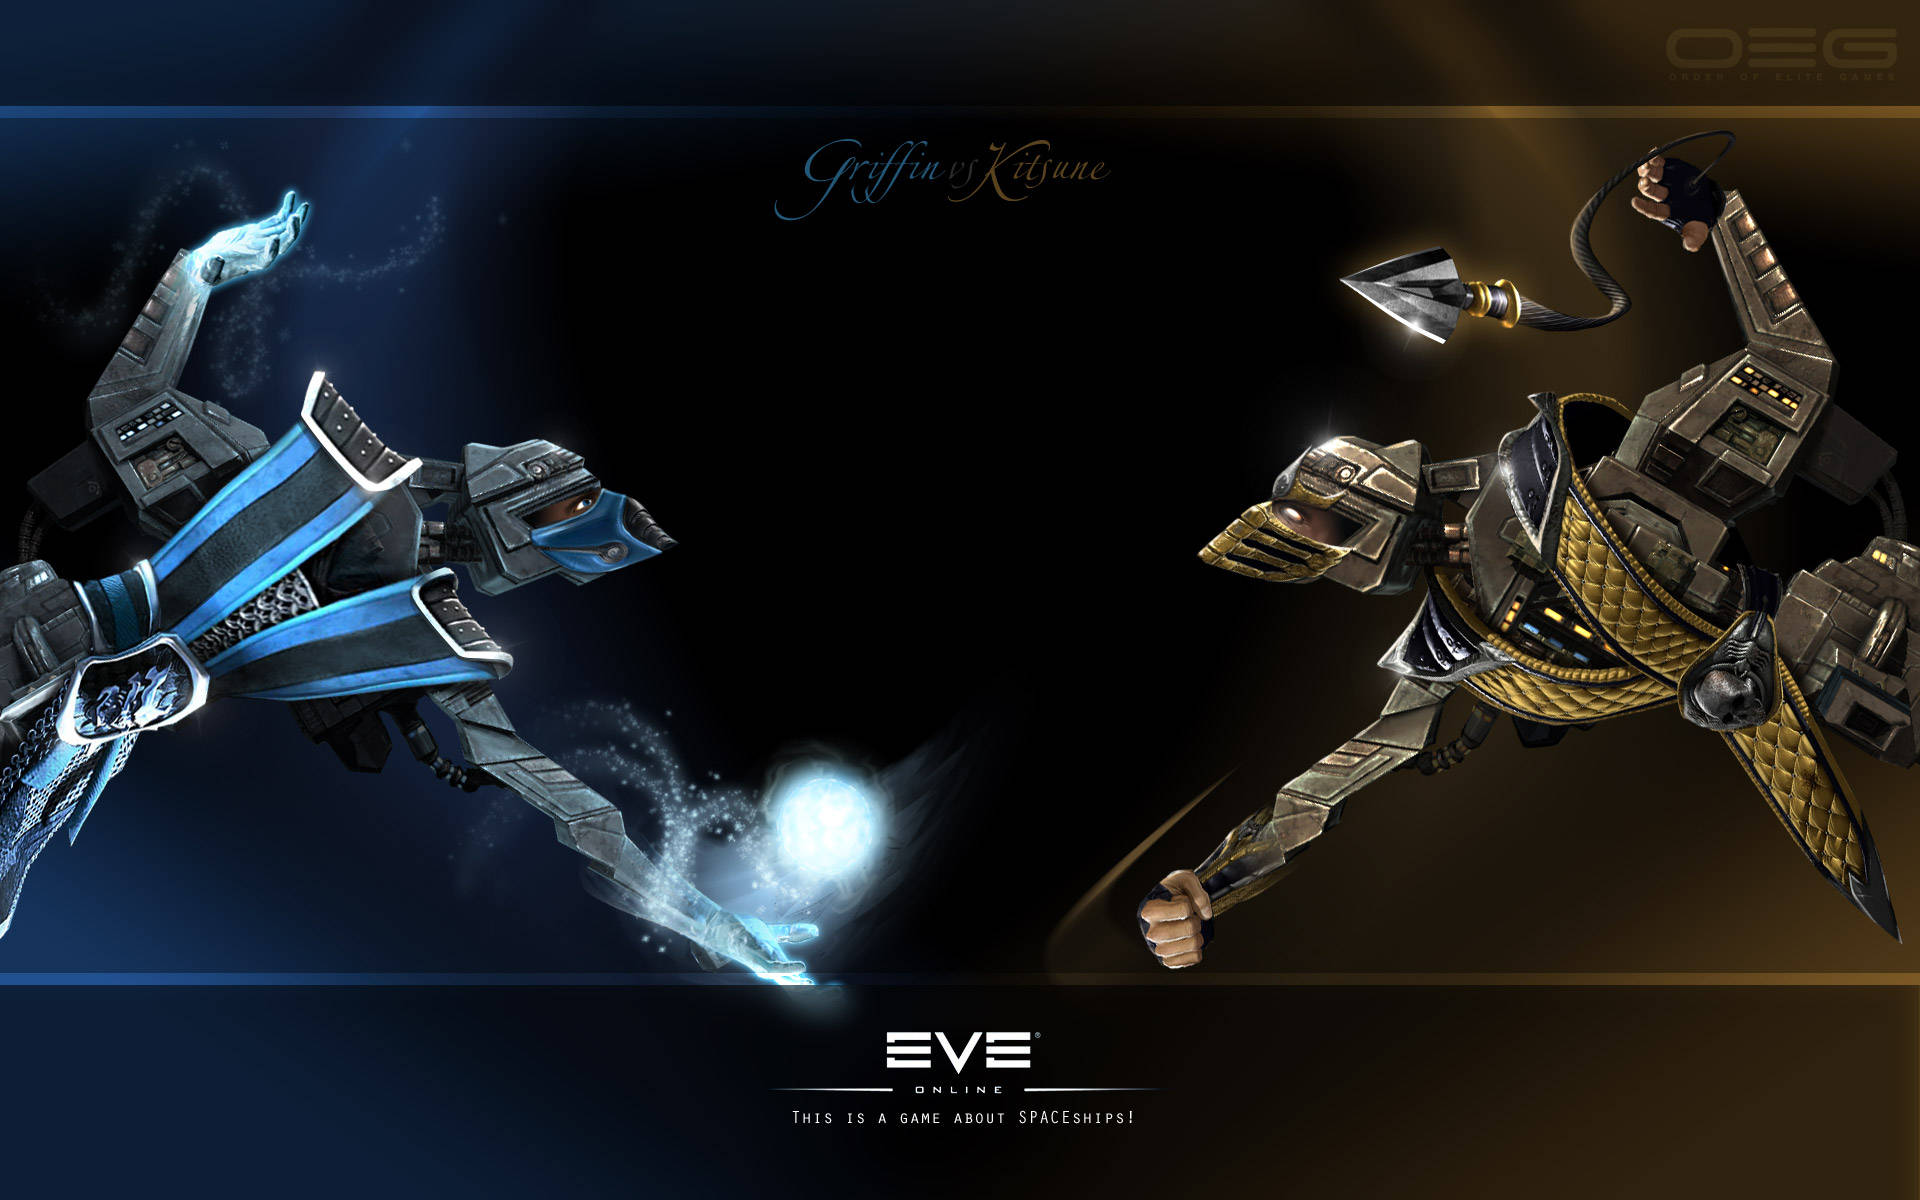 Eve Online Frigate Battle Griffin Vs Kitsune Wallpaper